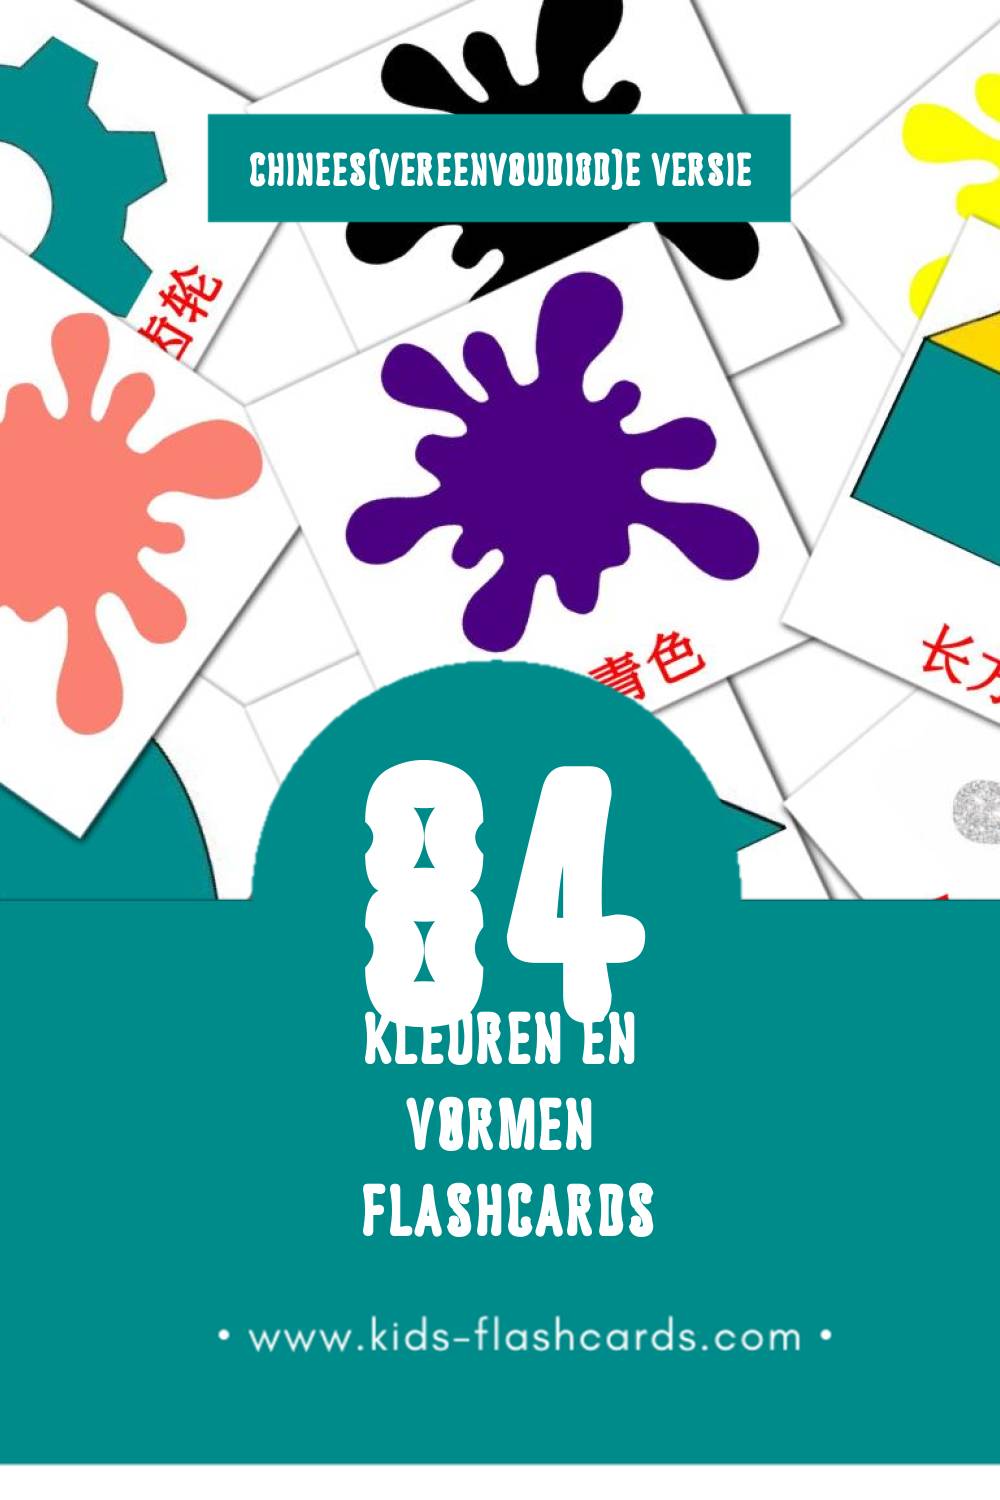 Visuele 颜色和形状 Flashcards voor Kleuters (84 kaarten in het Chinees(vereenvoudigd))